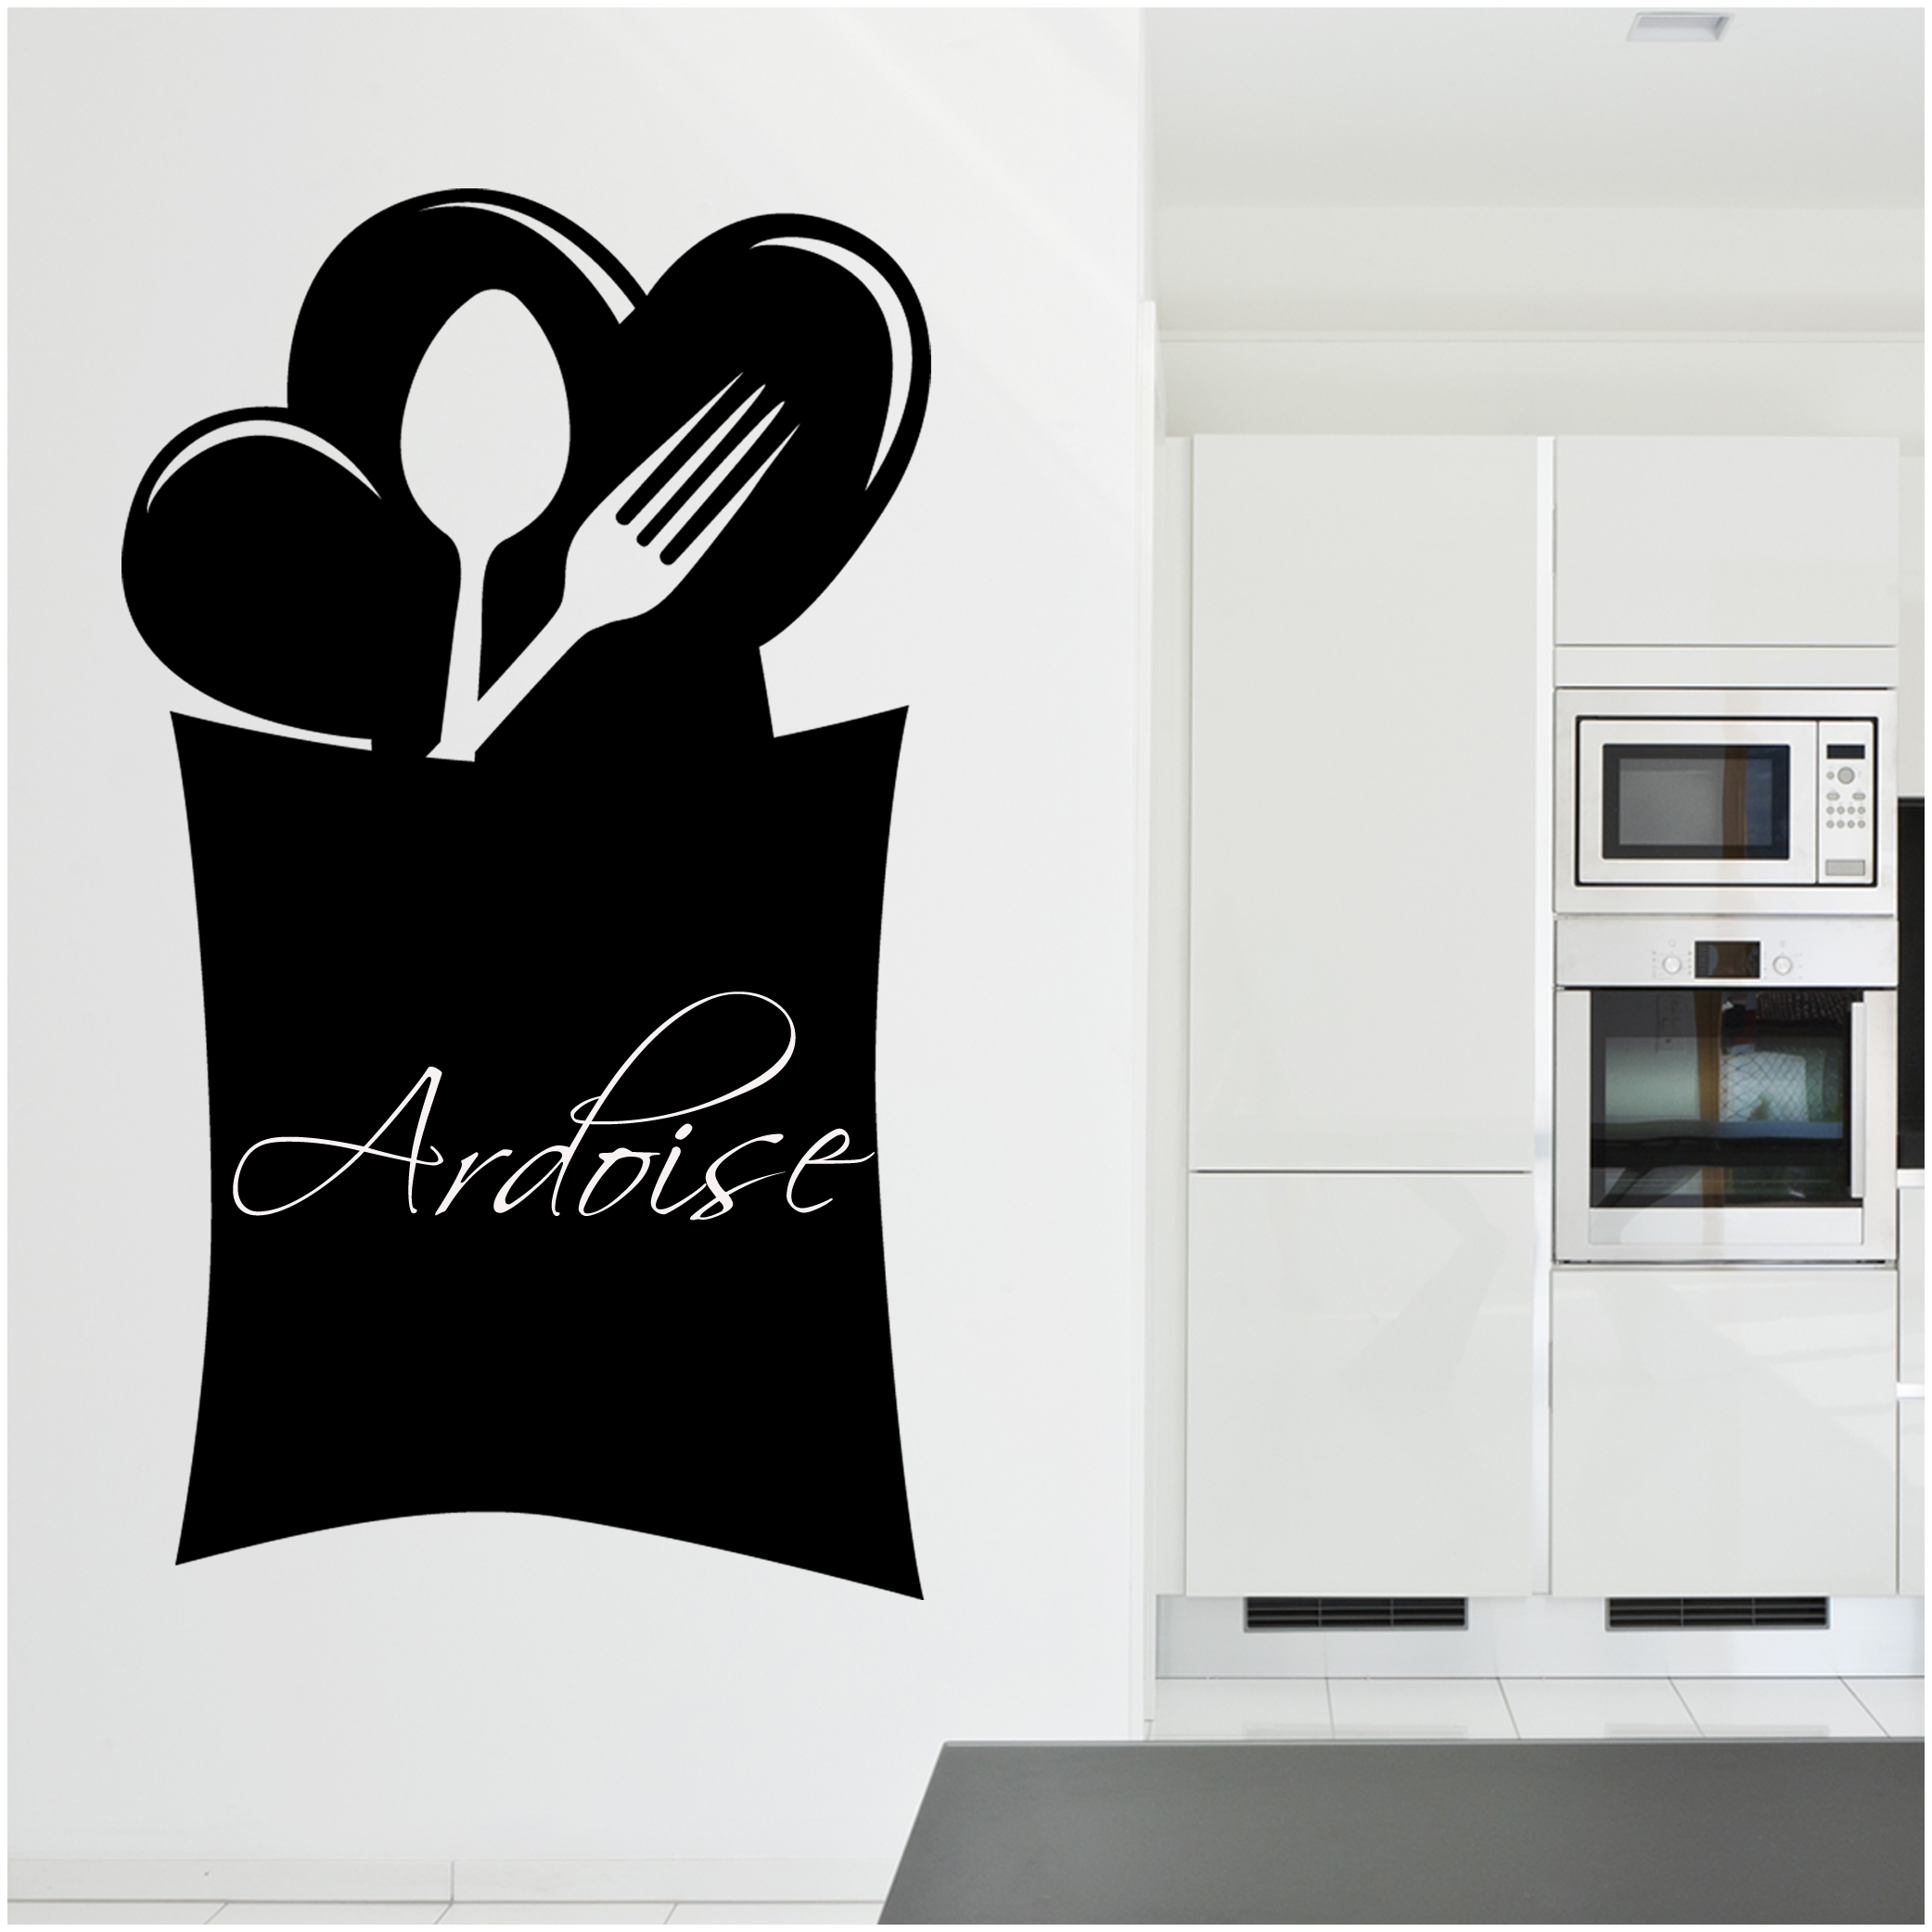 Lavagna adesiva macchia - adesivo murale - lavagna da parete promemoria -  sticker lavagna cucina